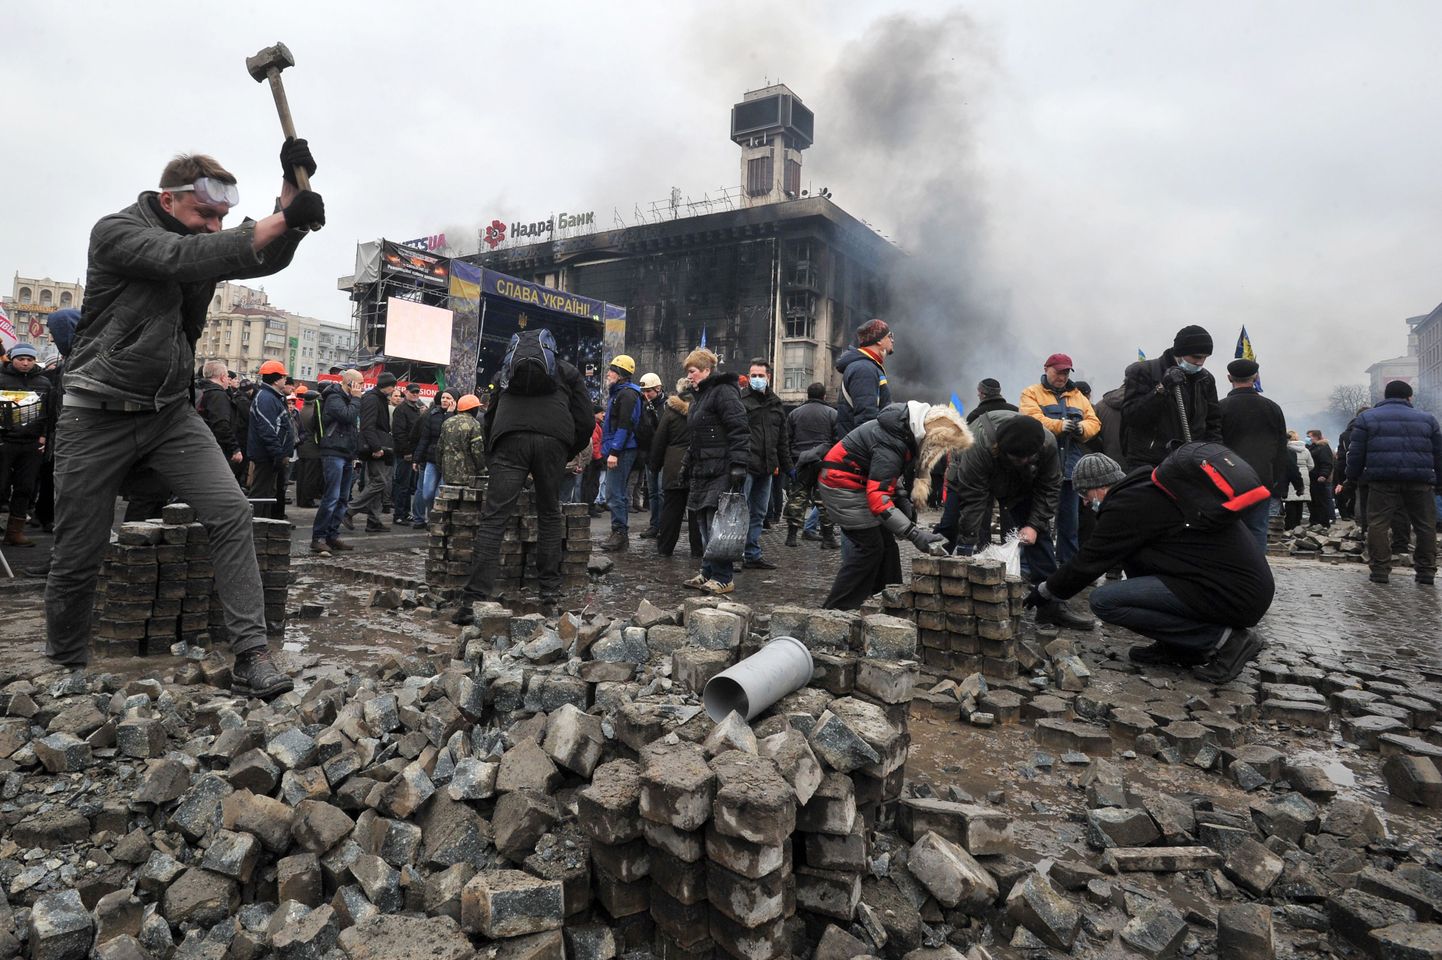 Kiievi protestijad eemaldasid täna Iseseisvuse väljakul võimaliku miilitsa pealetungi tarbeks tänavakivisid.